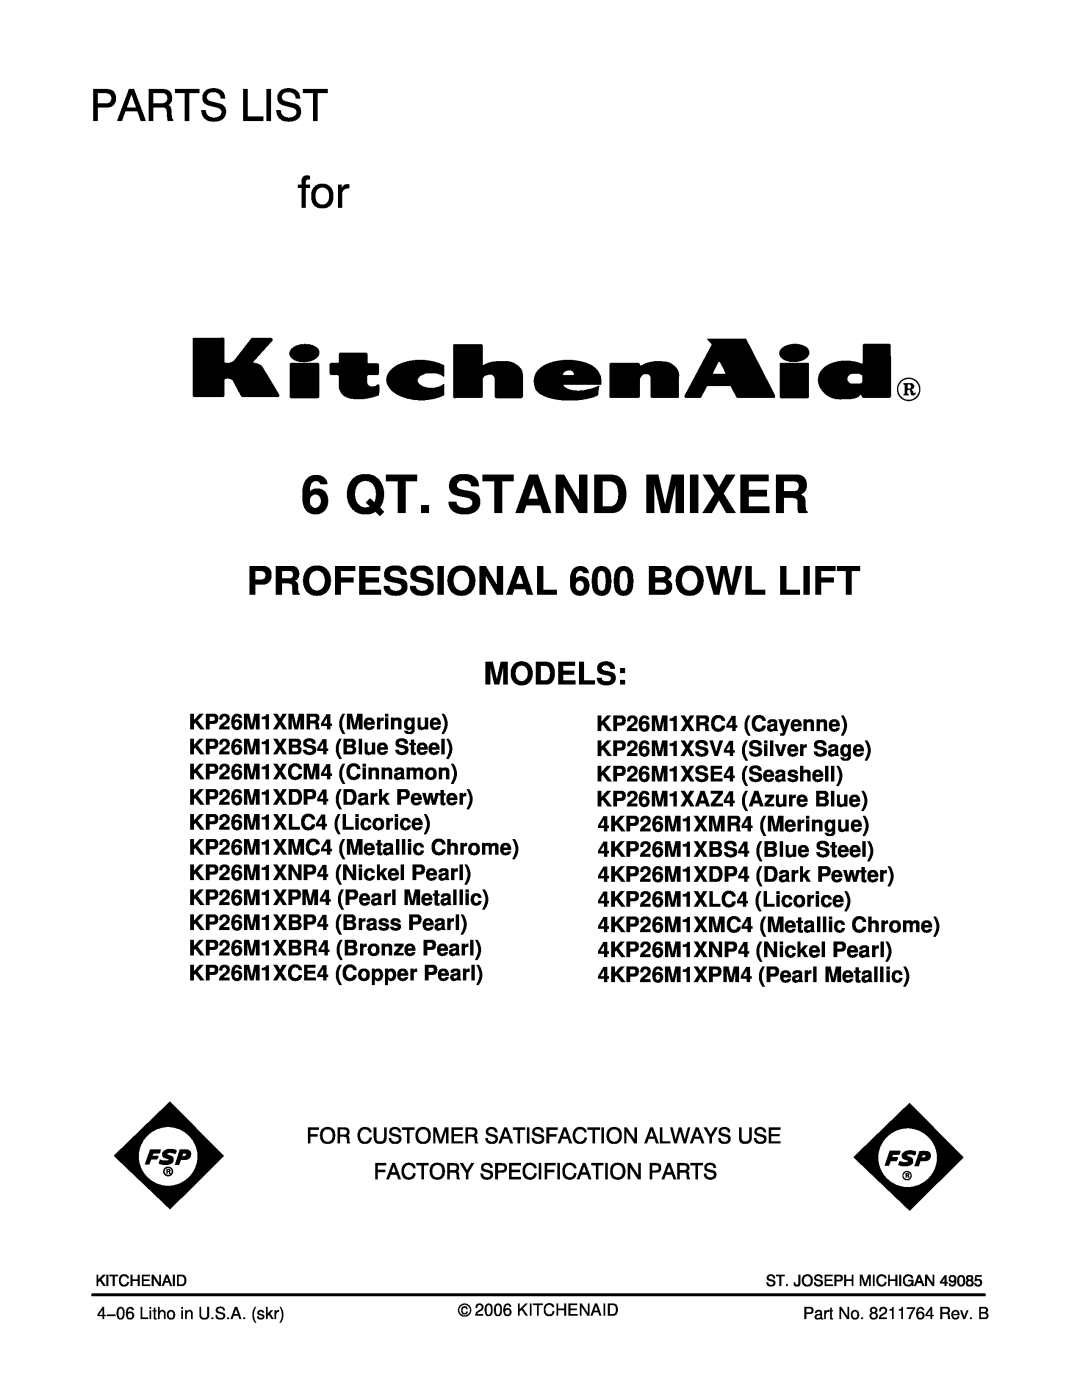 KitchenAid KP26M1XMC4, KP26M1XMR4, KP26M1XPM4, KP26M1XNP4 manual Models, 6 QT. STAND MIXER, PROFESSIONAL 600 BOWL LIFT 